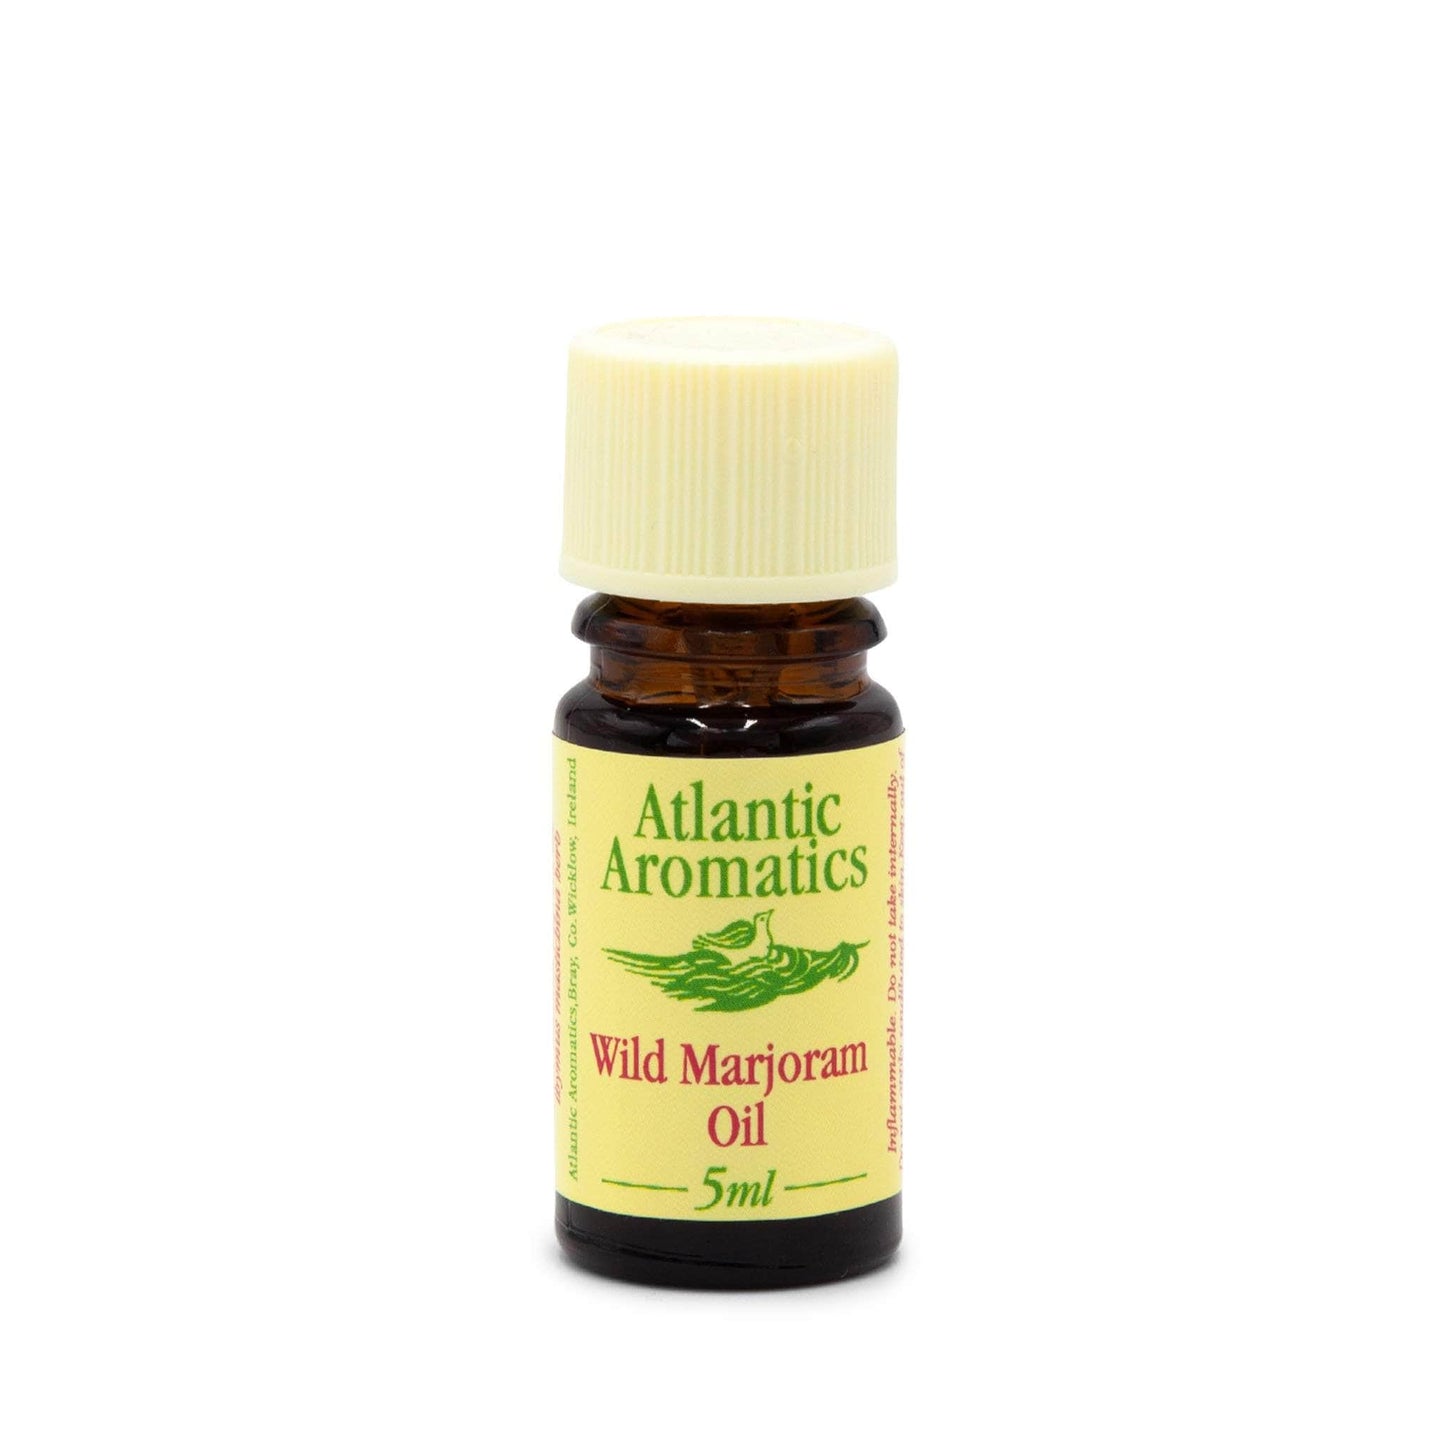 Atlantic Aromatics Essential Oil Atlantic Aromatics Wild Marjoram Oil 5ml